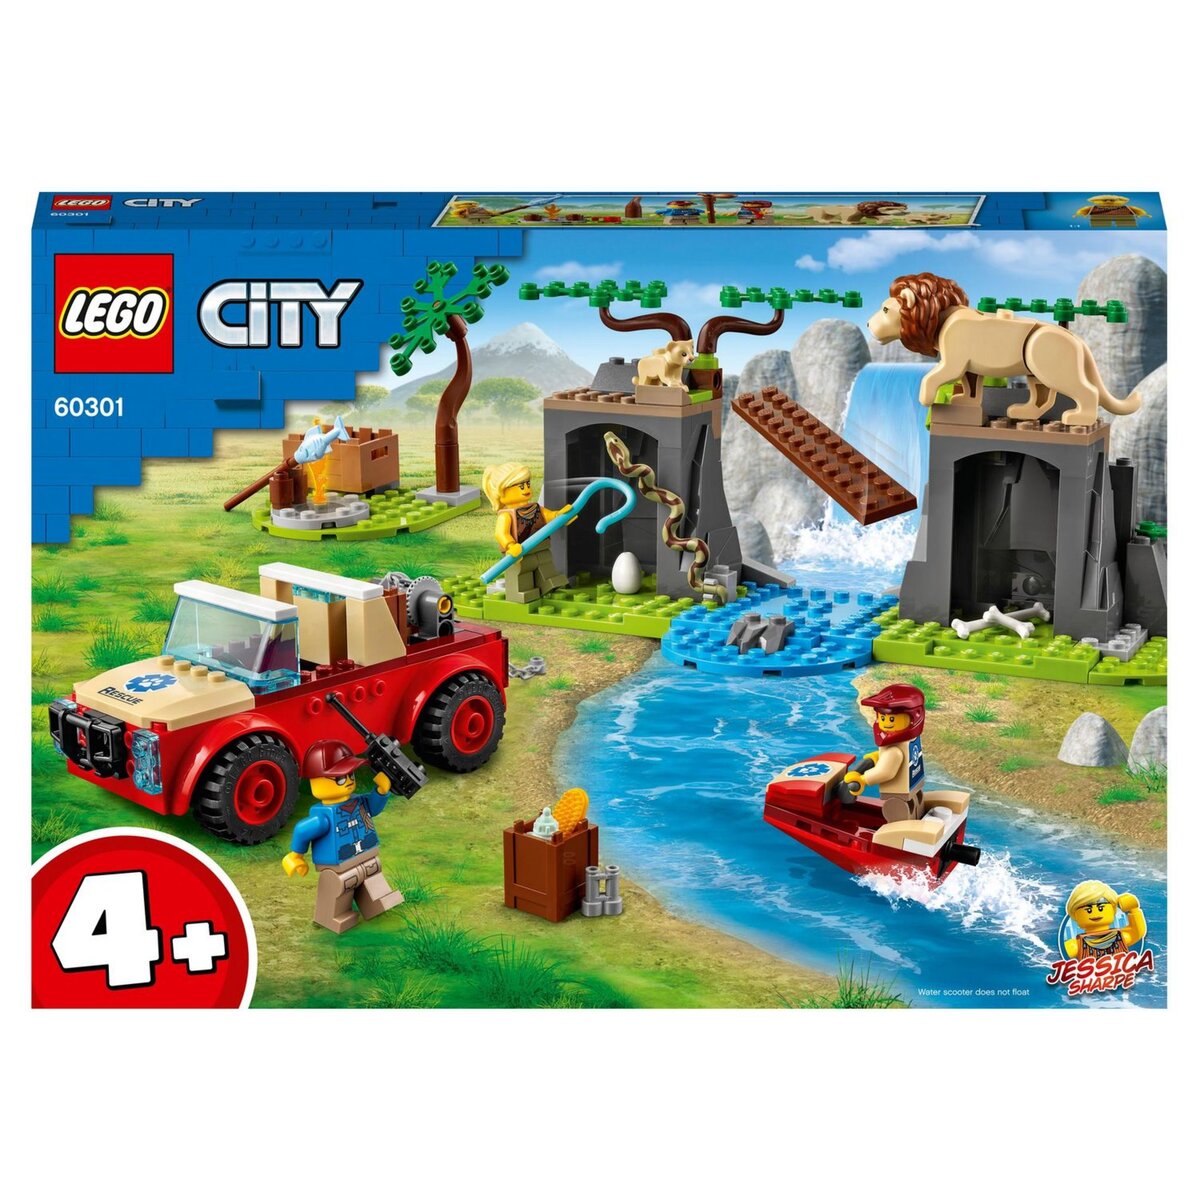 LEGO City 60346 pas cher, La grange et les animaux de la ferme